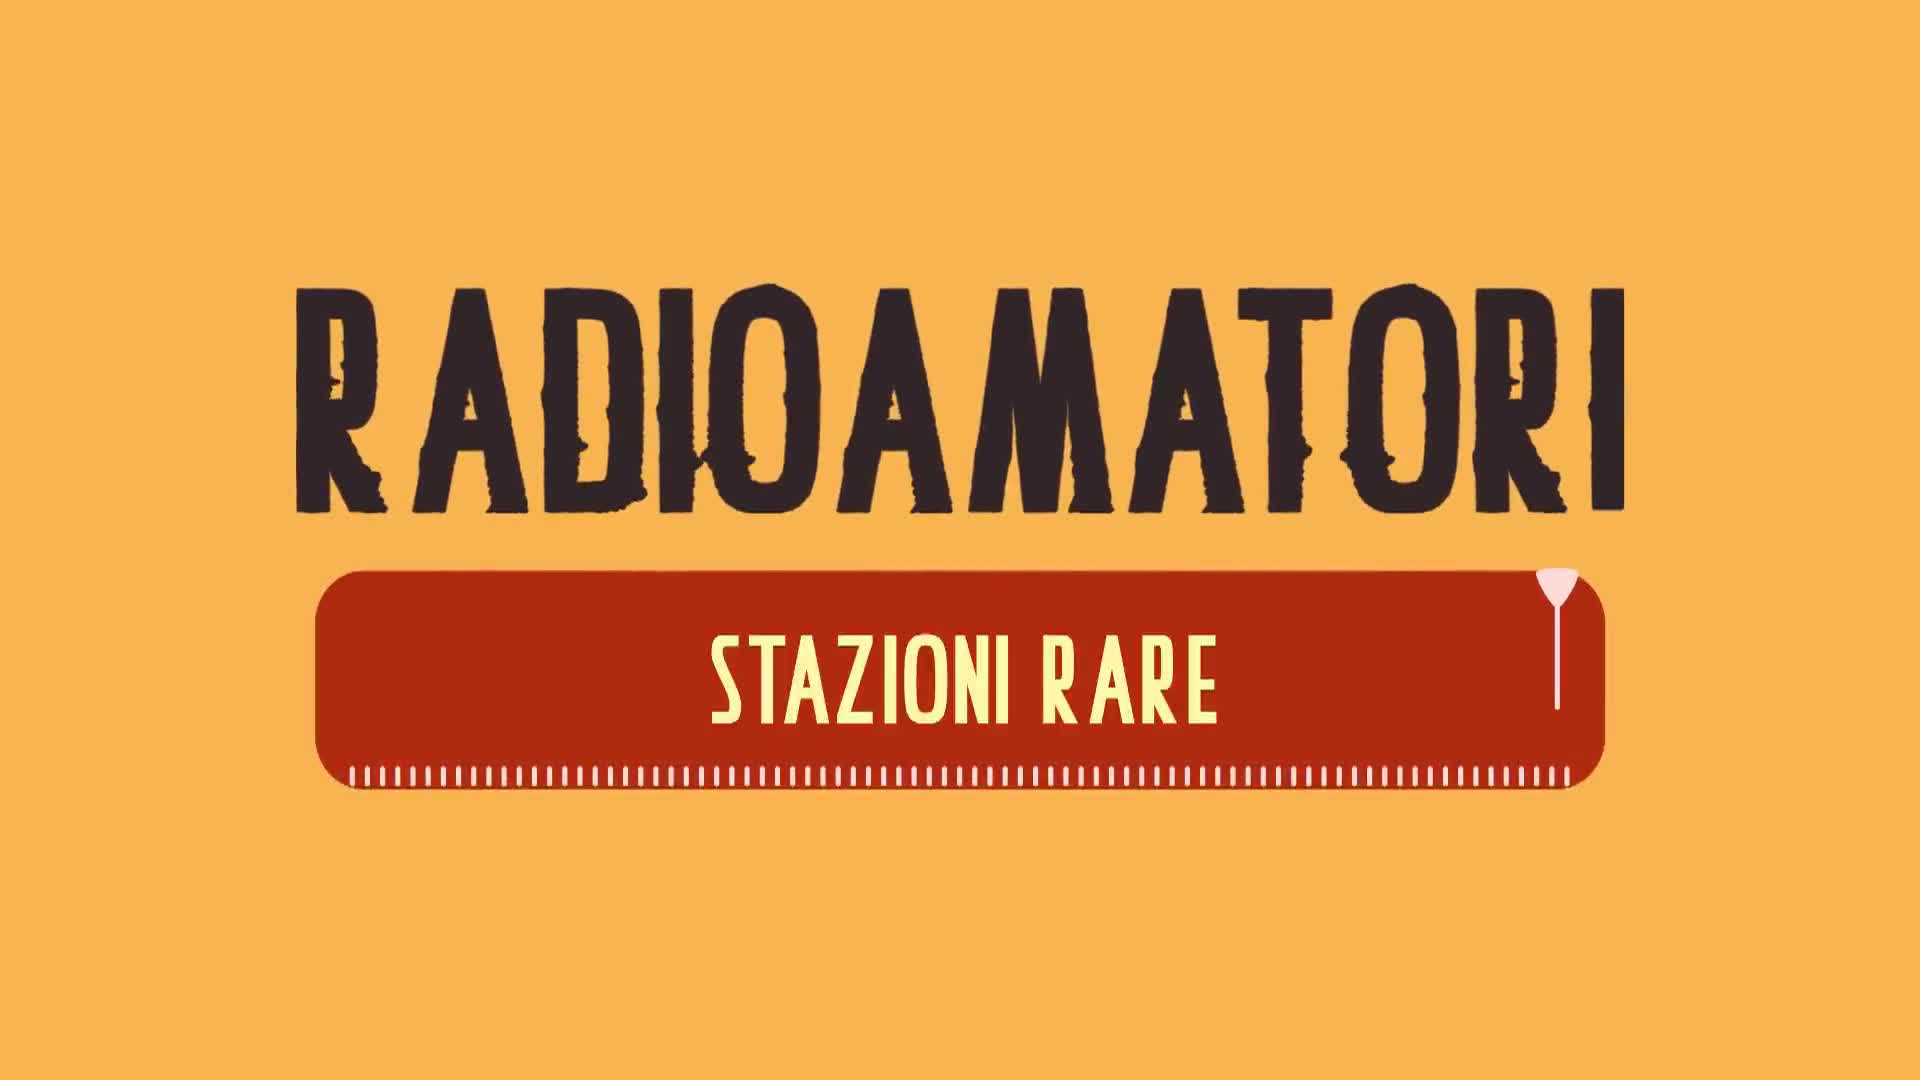 Radioamatori | Stazioni rare - immagine